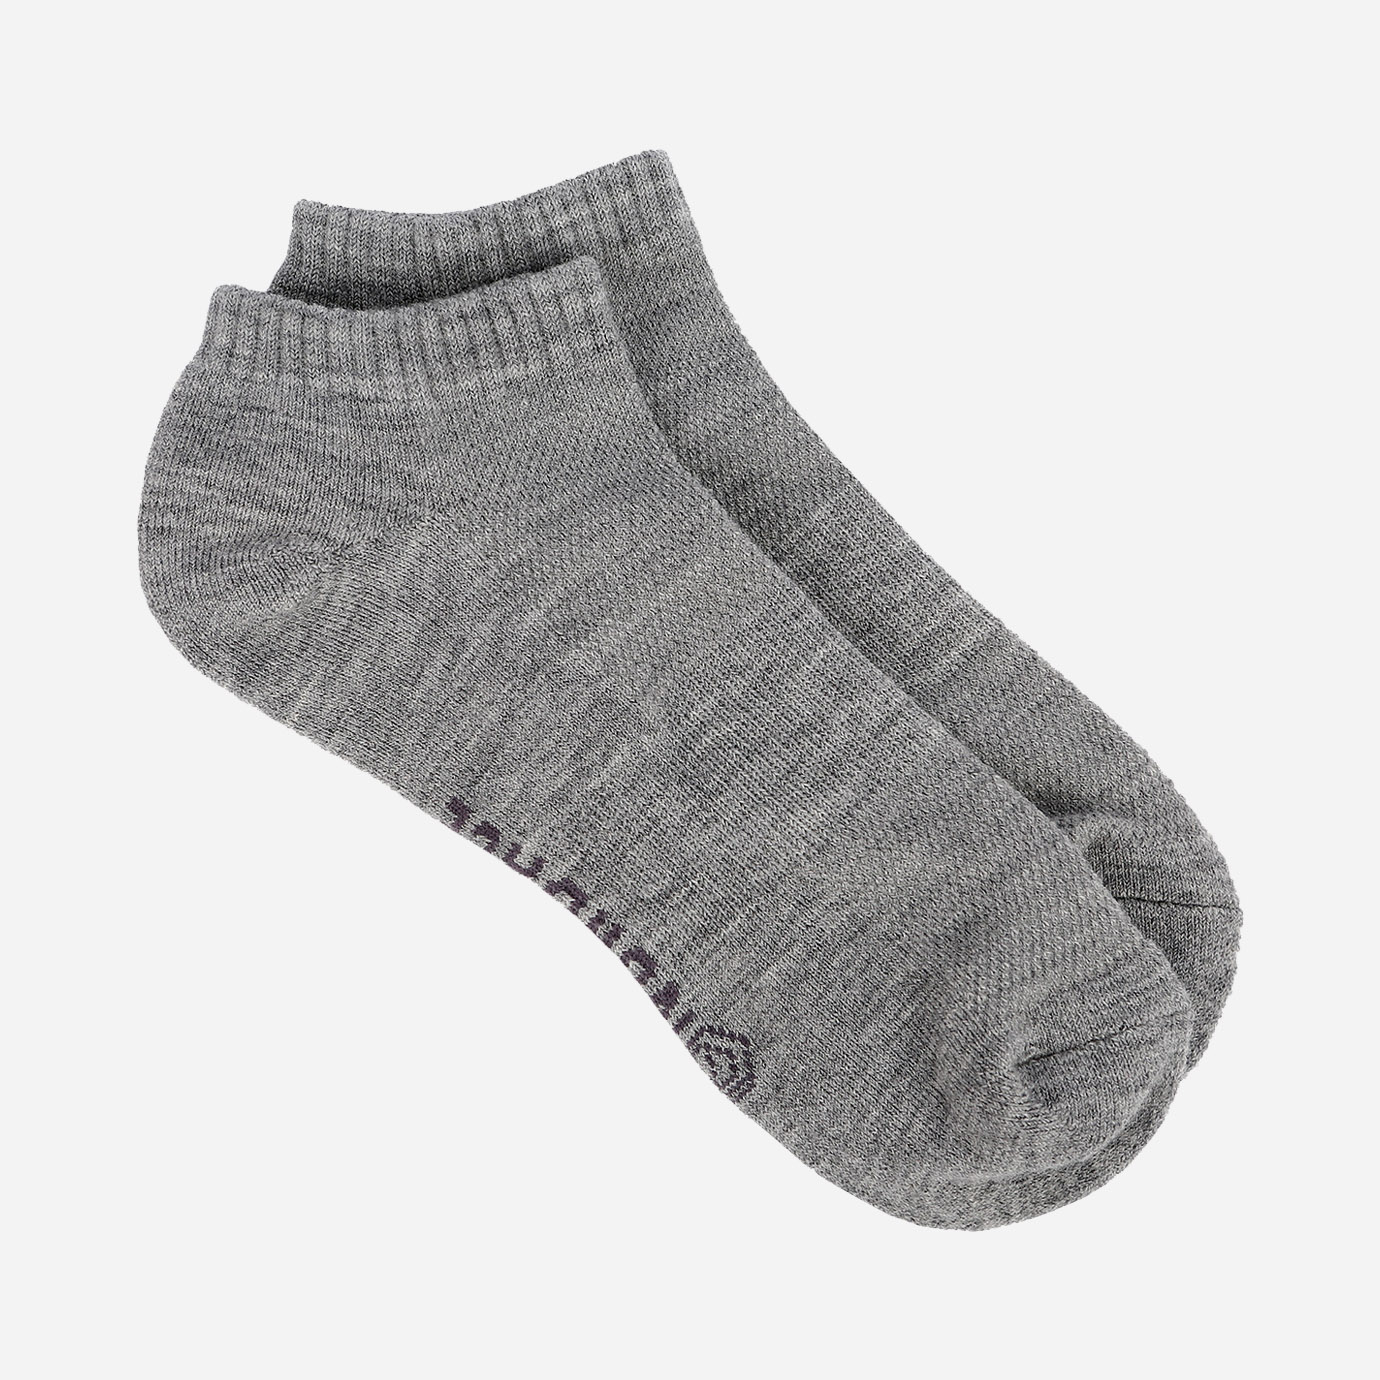 Nordace Merino Wool Ankle Socks